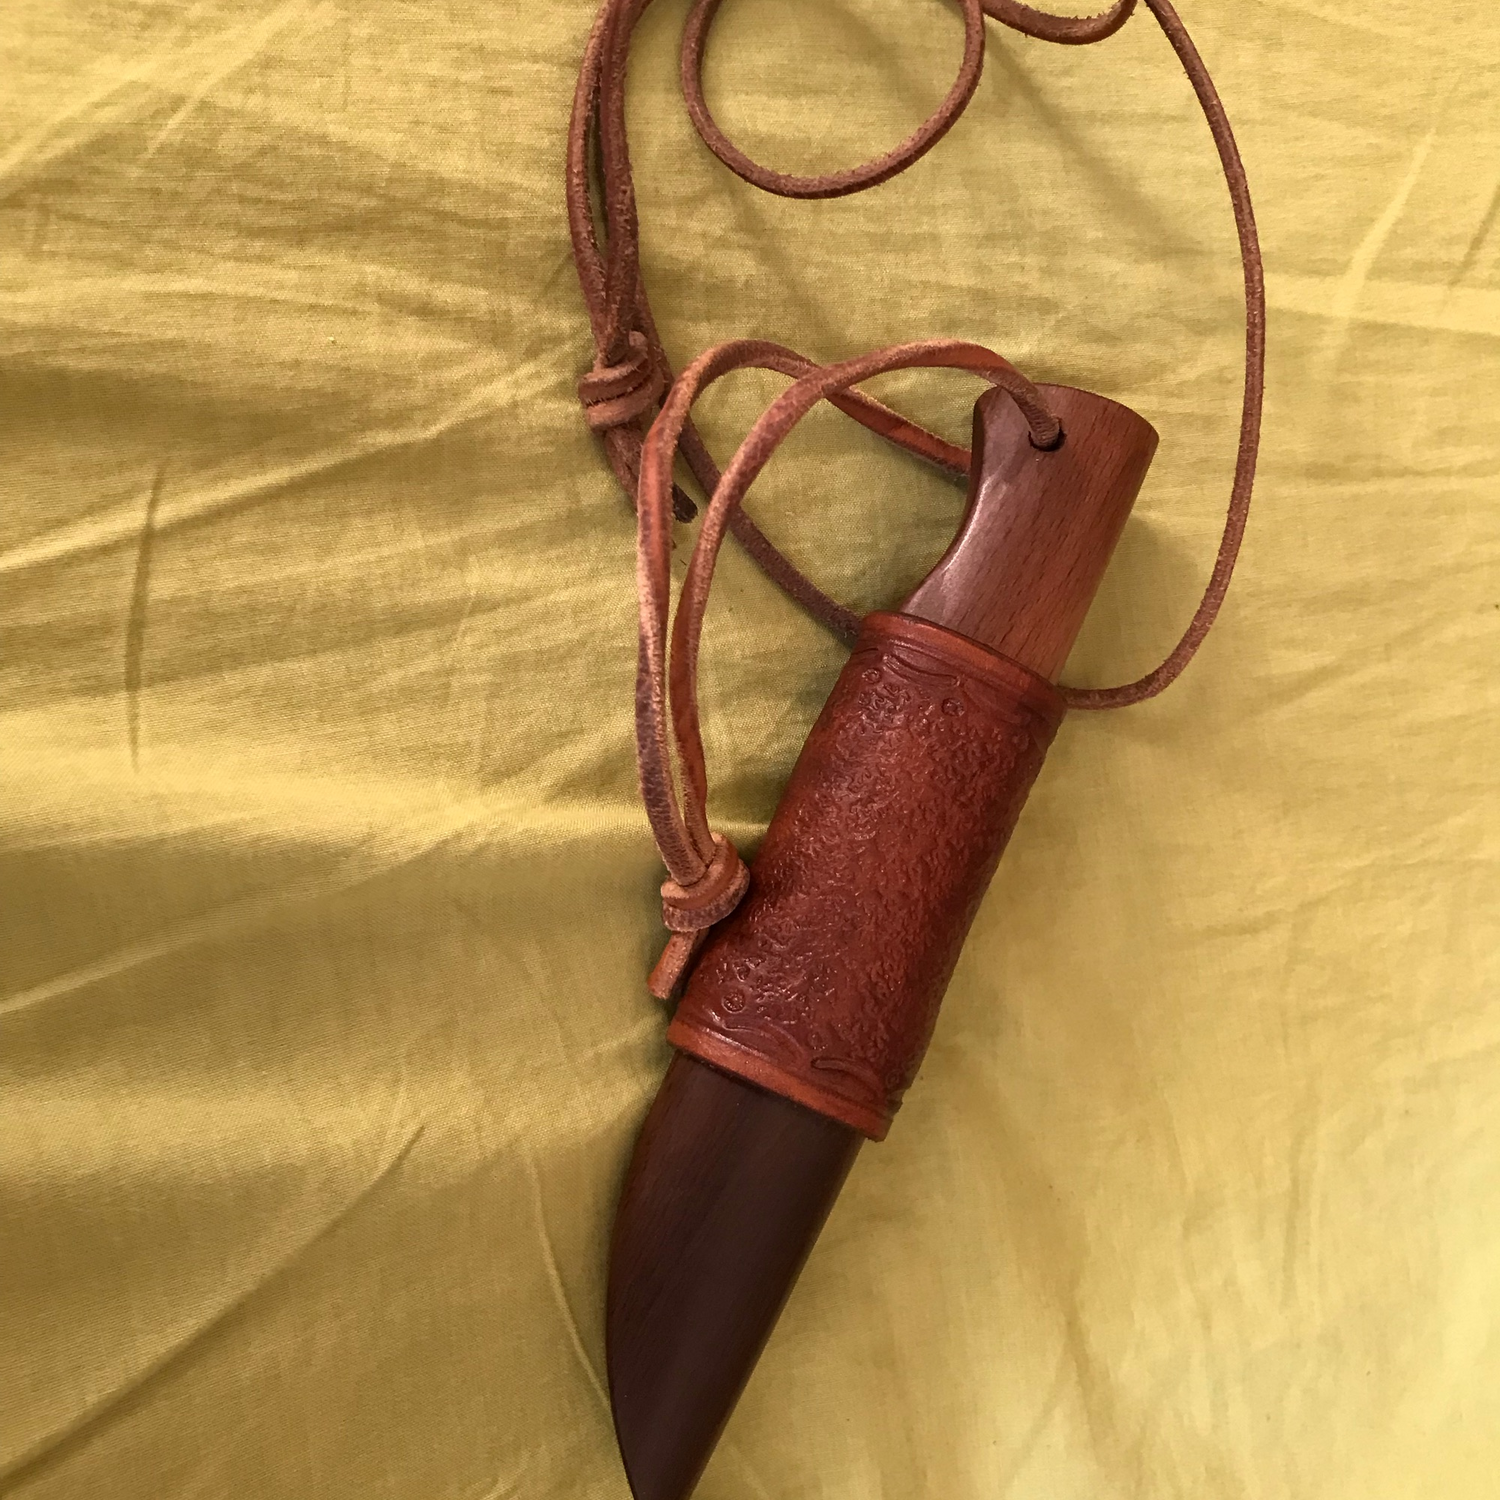 Photo №4 к отзыву покупателя Evgenij о товаре Нож нагрудный скинер (подарок мужчине охотнику, рыбаку)